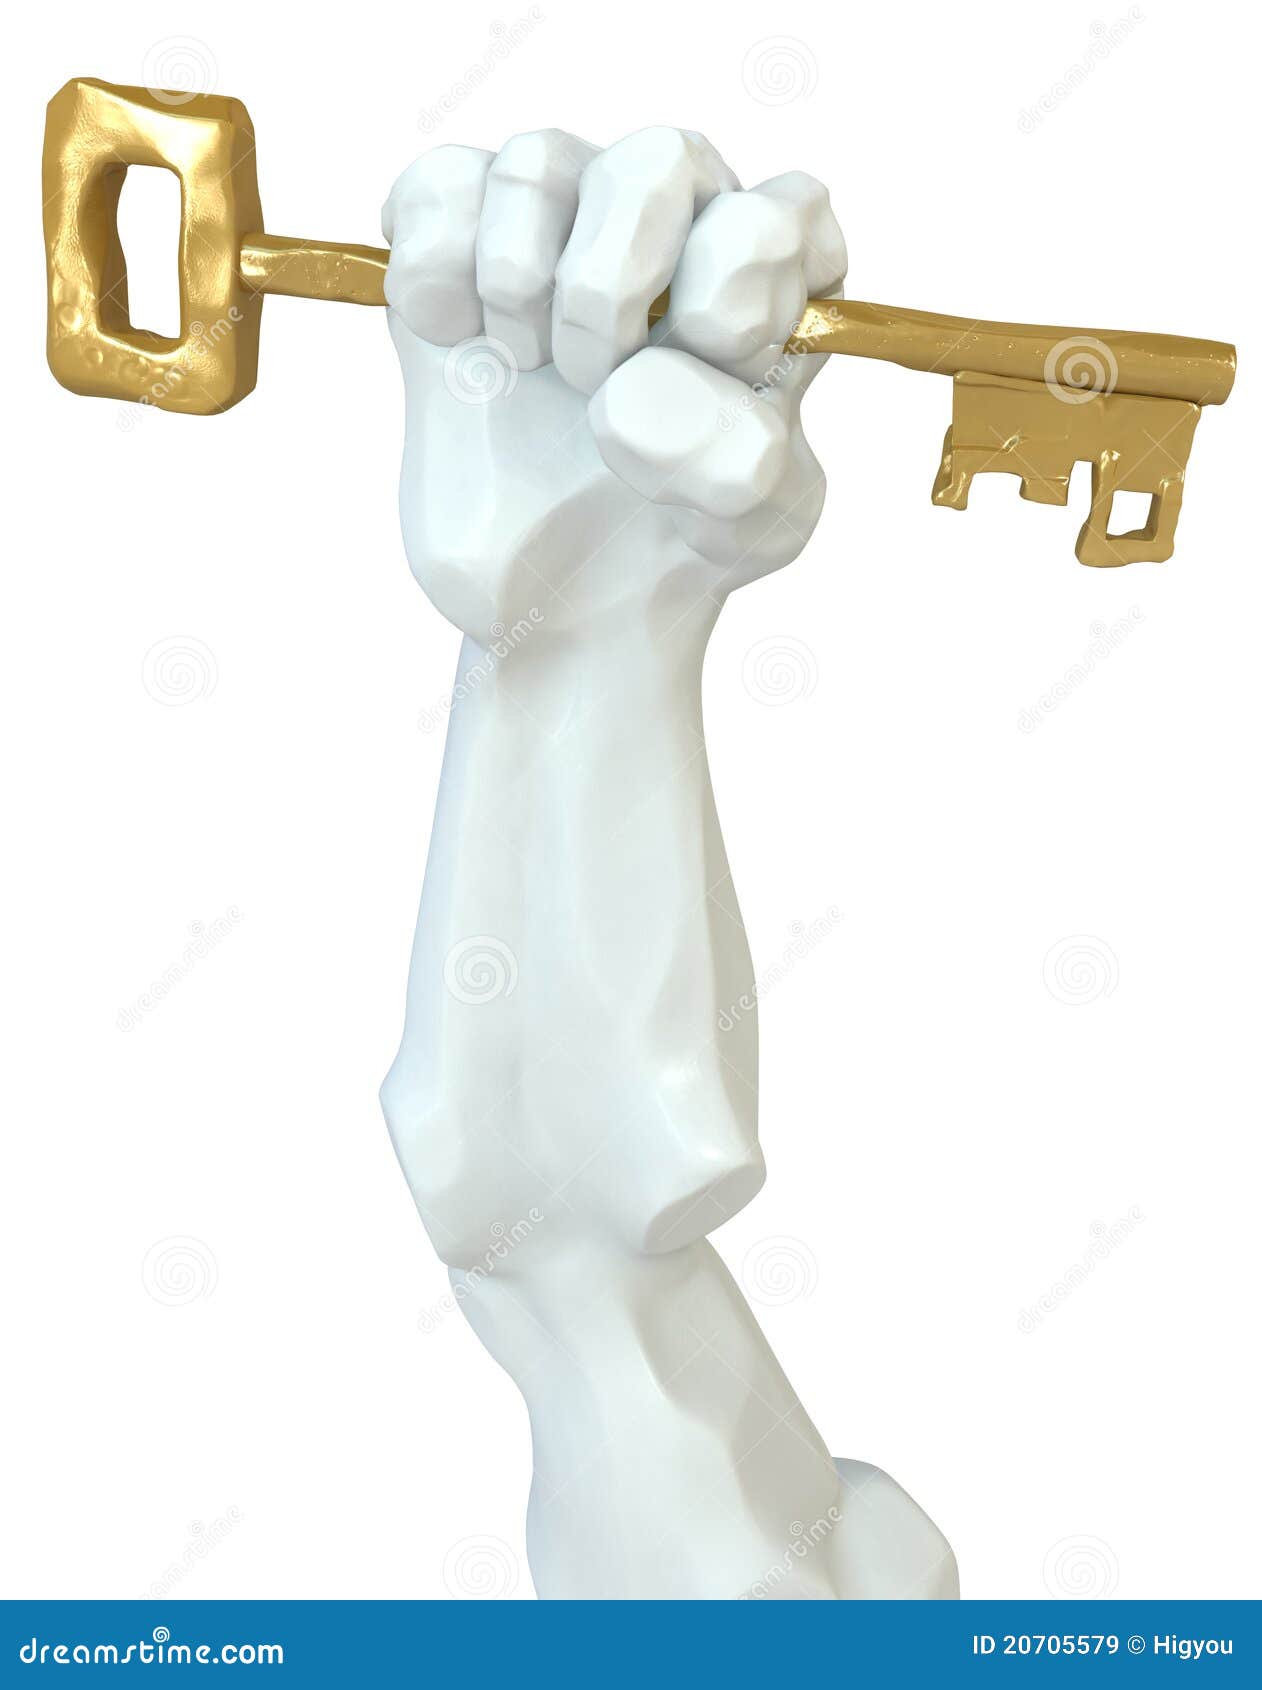 statue-fist-key-20705579.jpg